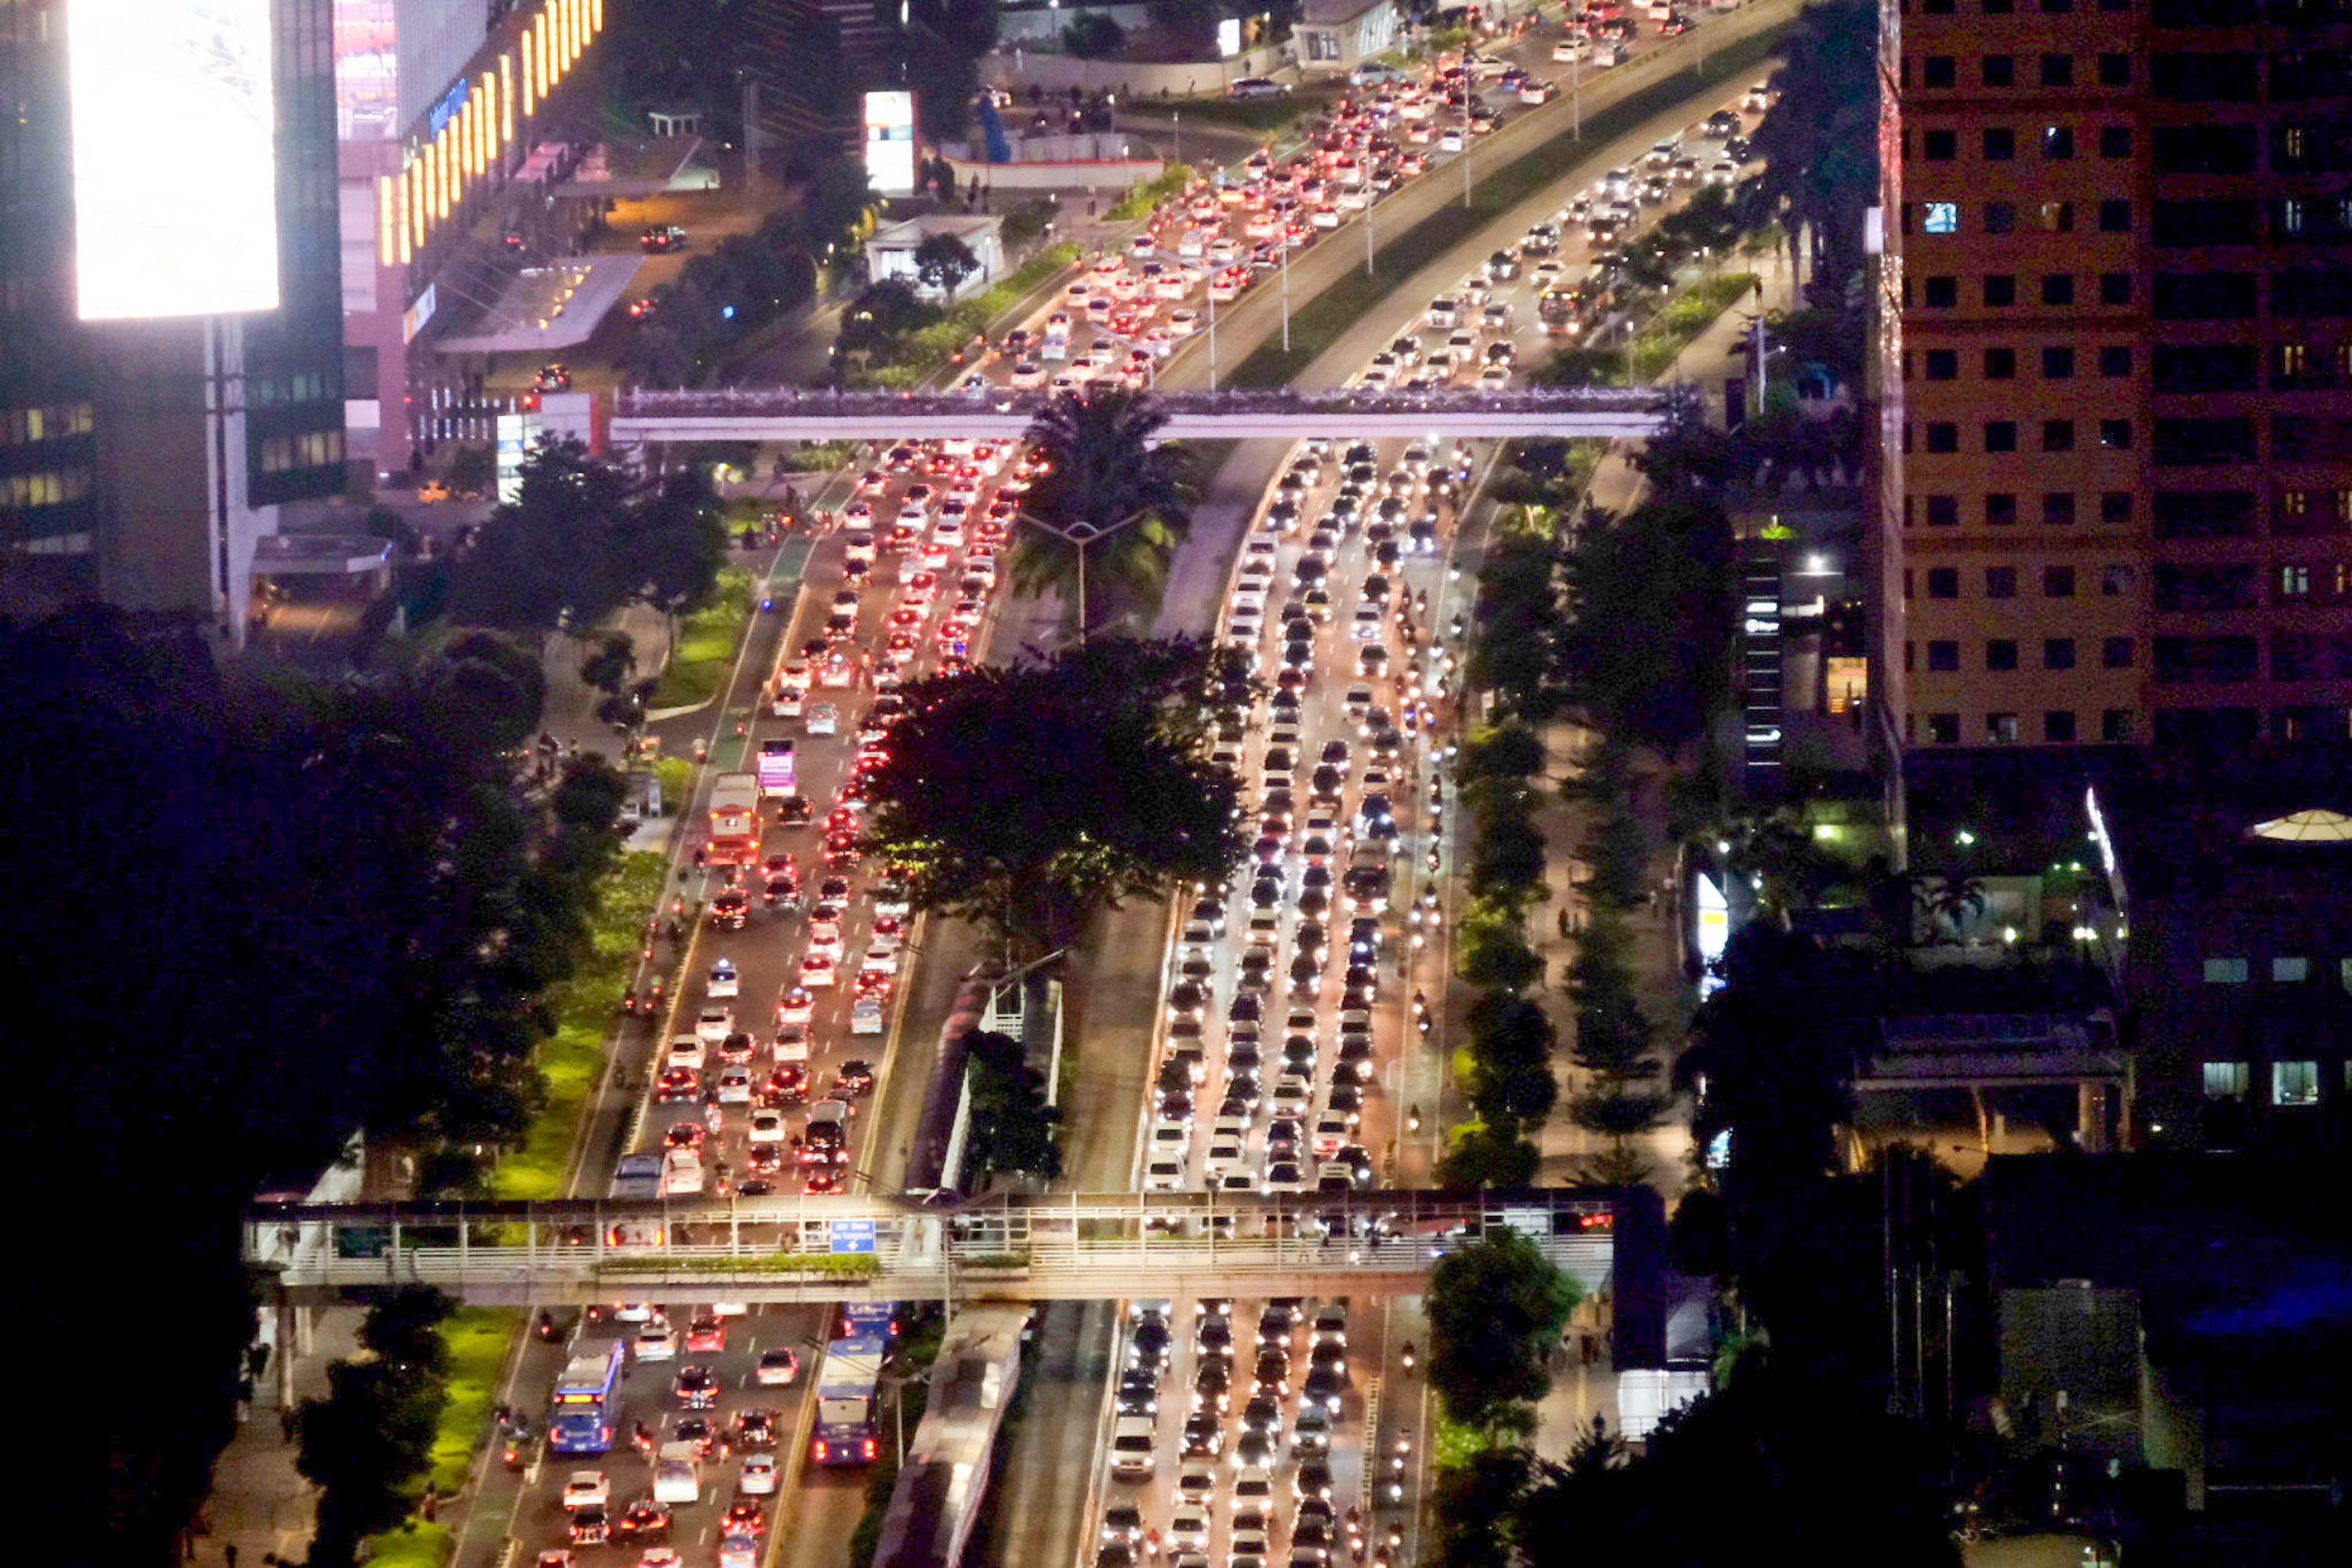 Tanpak kendaraan terjebak kemacetan di ruas jalan Sudirman, Jakarta. Foto: Ismail Pohan/TrenAsia